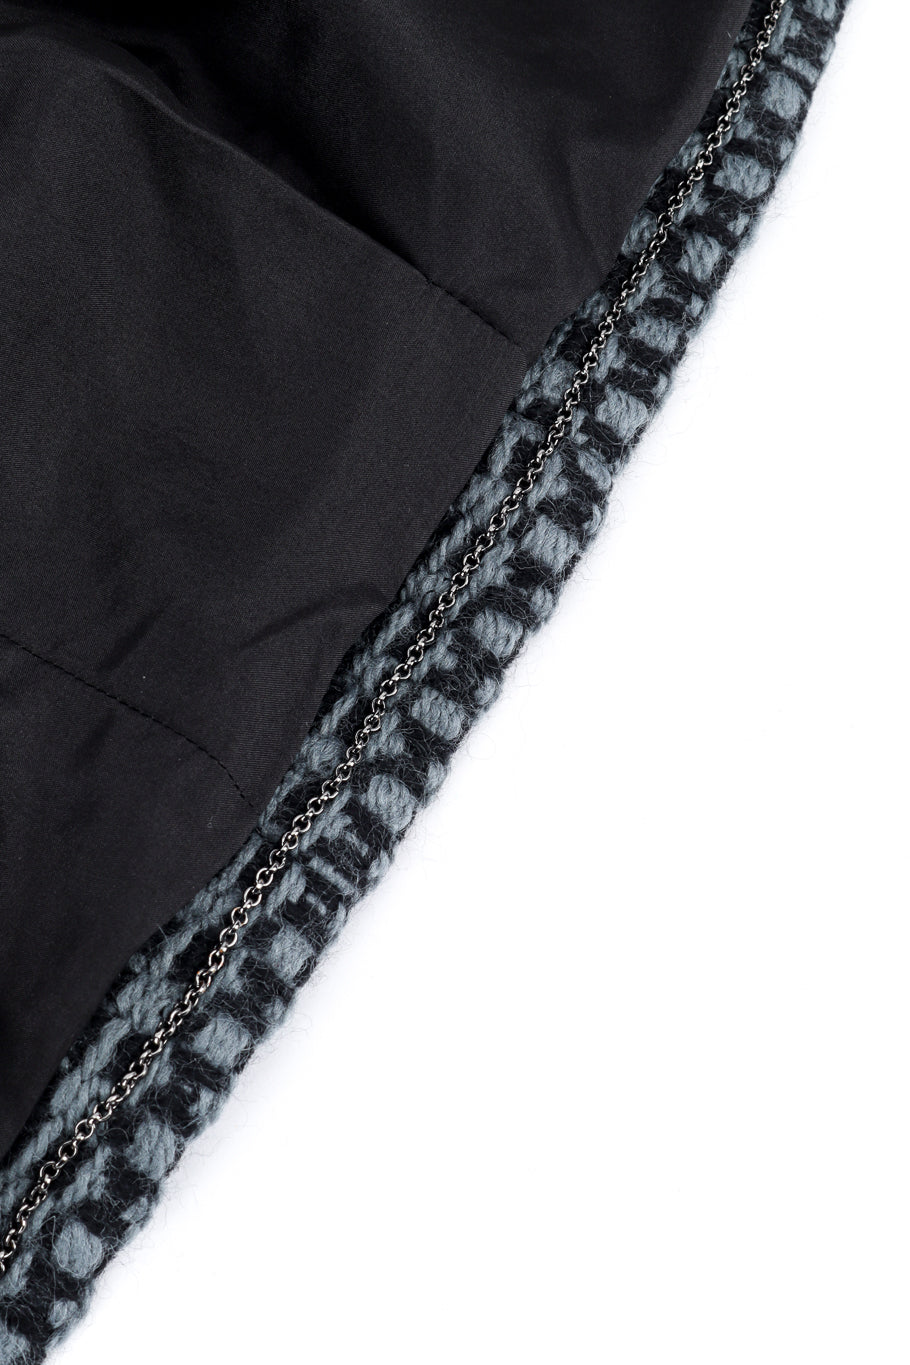 Chanel 2000 F/W Knit Wool Jacket hem chain @recess la